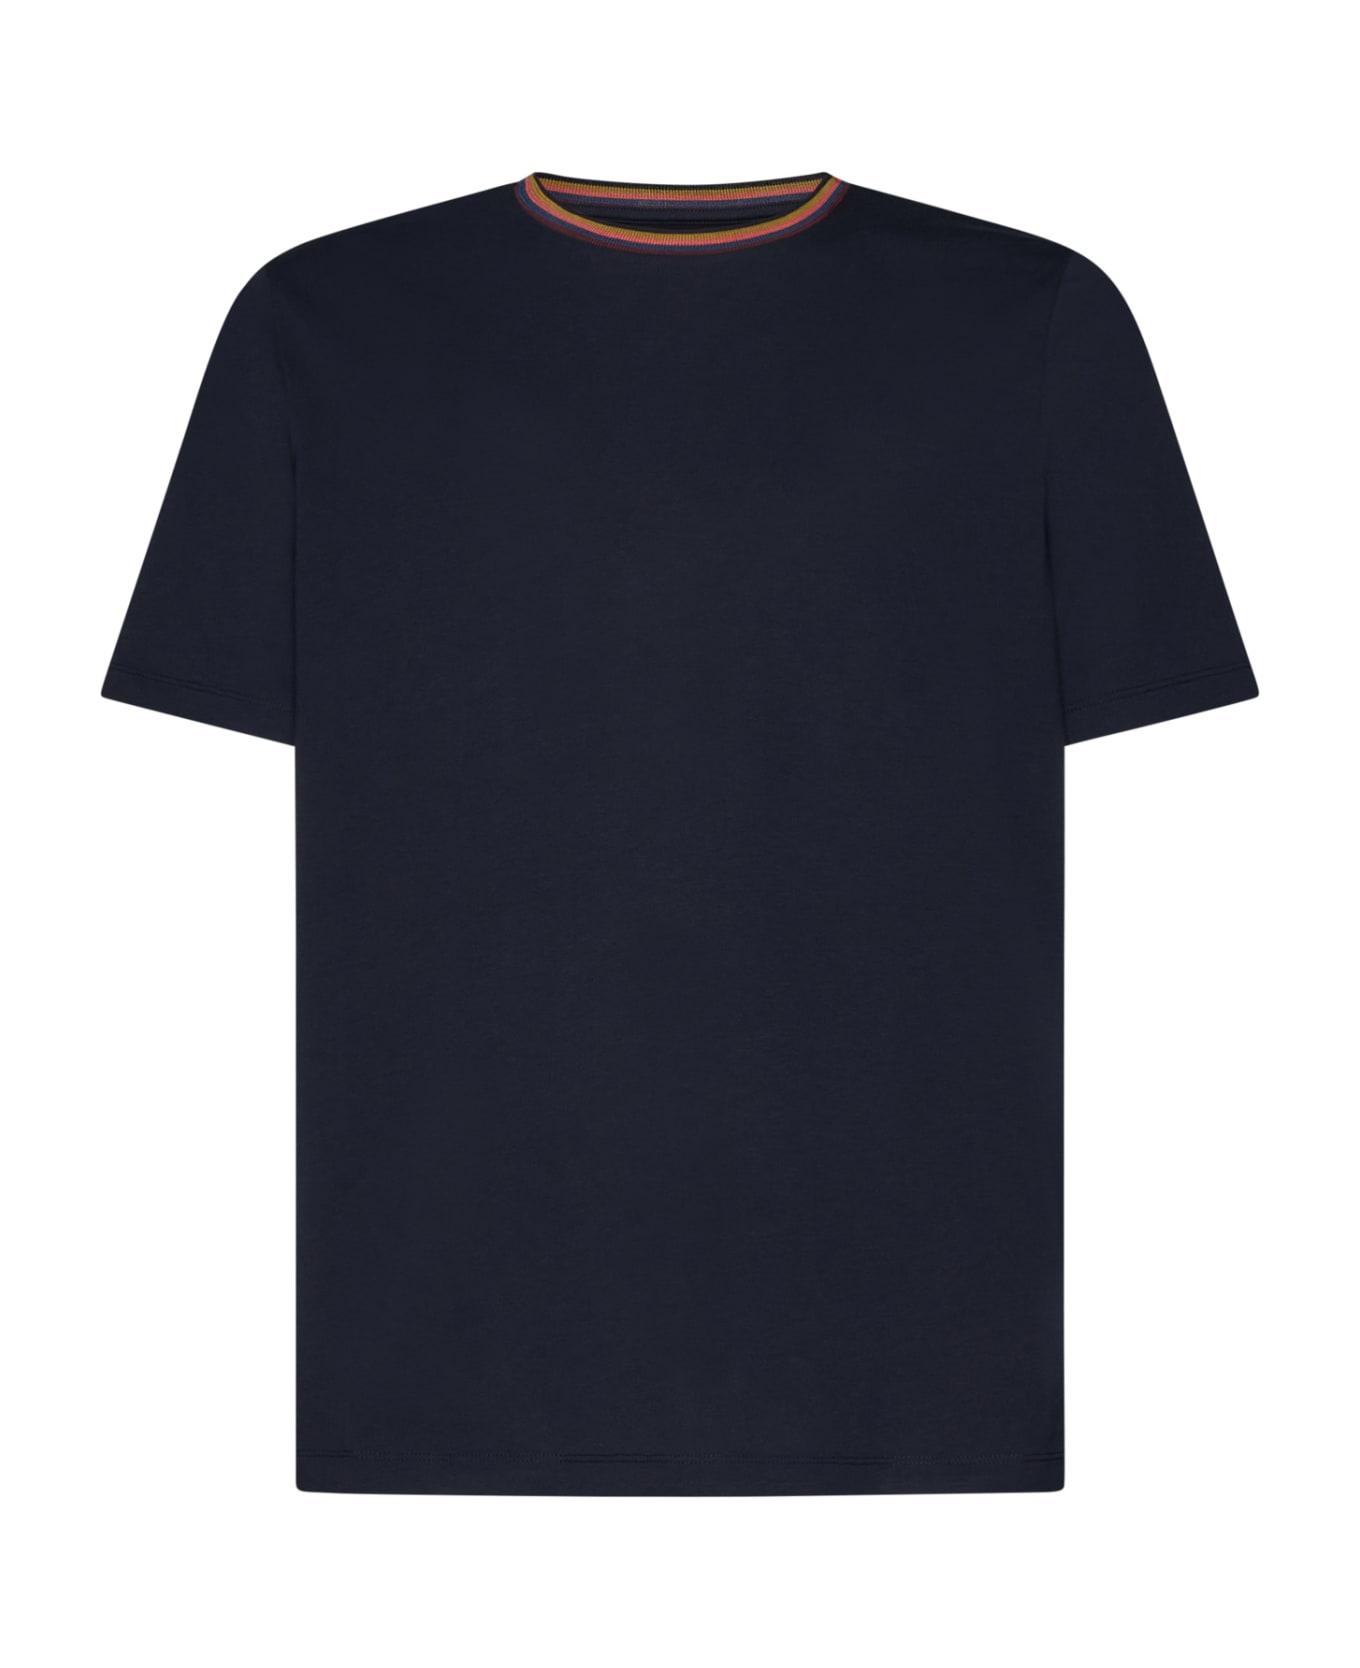 Paul Smith T-Shirt - VERY DARK NAVY